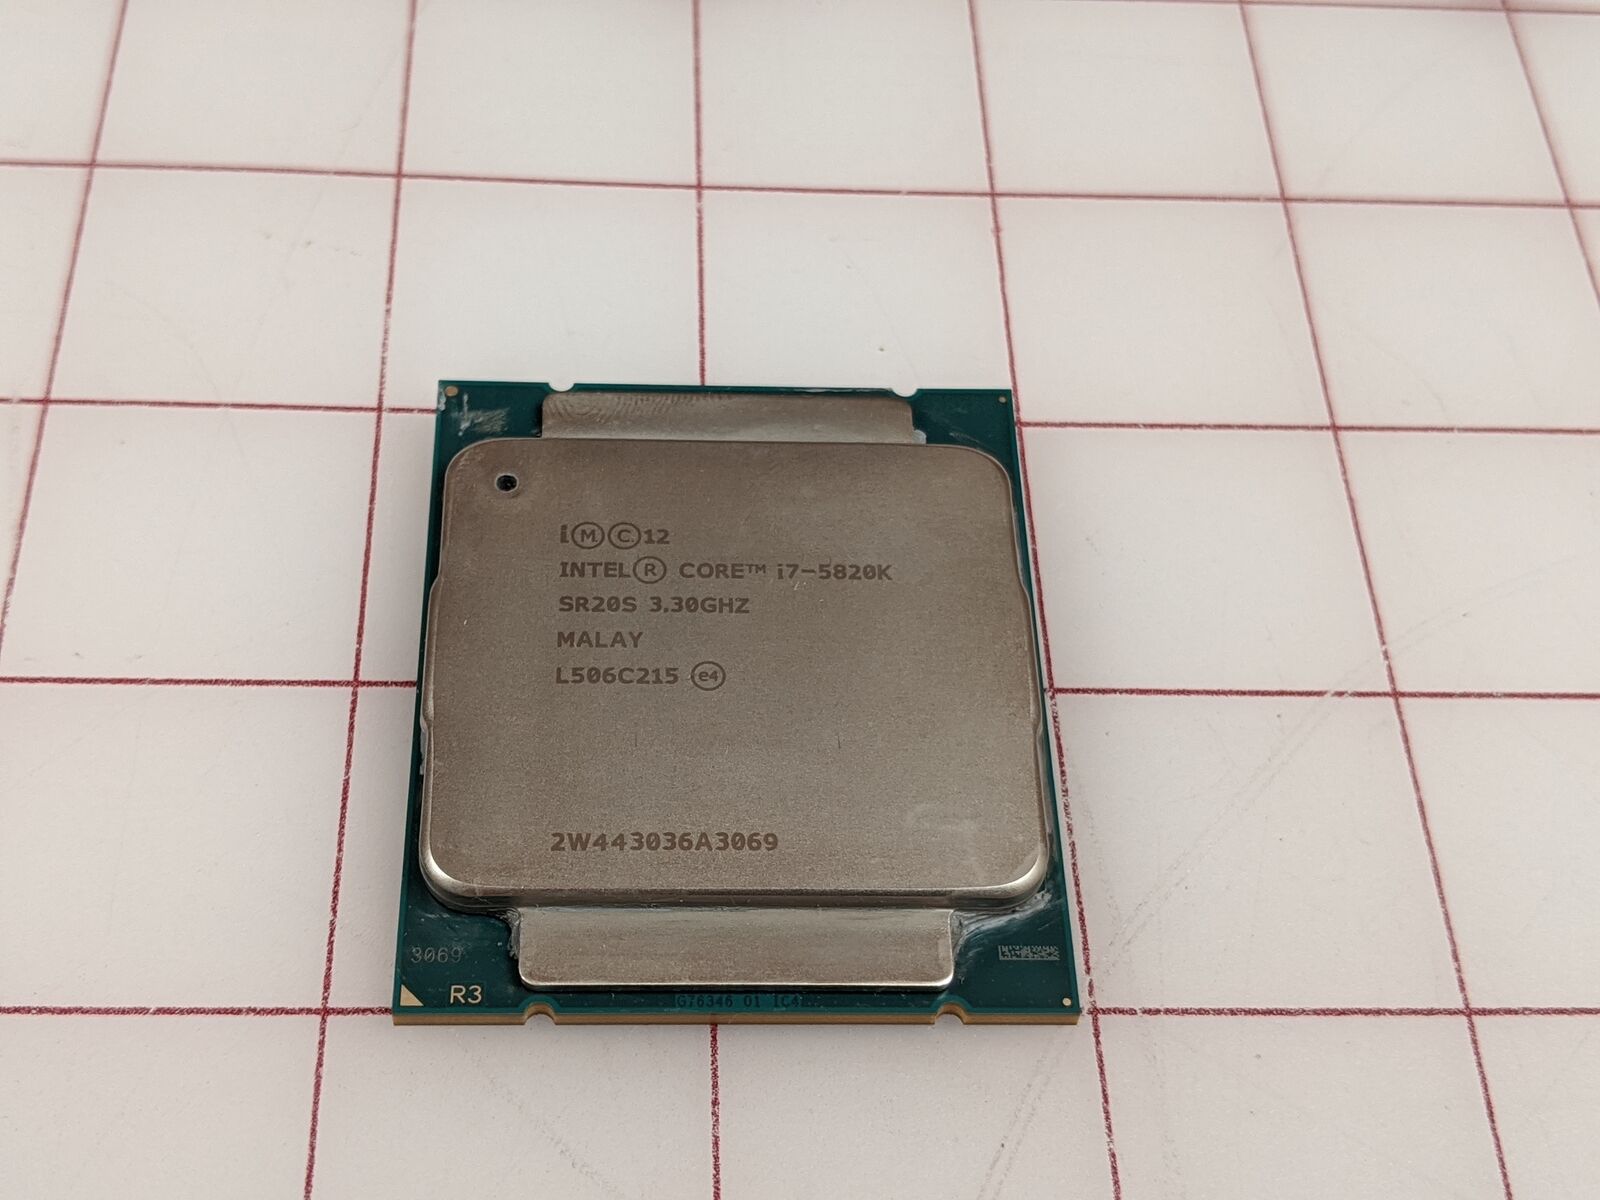 Intel Core i7-5820K Haswell-E 6-Core 3.3 GHz LGA 2011-v3 140W Desktop Processor